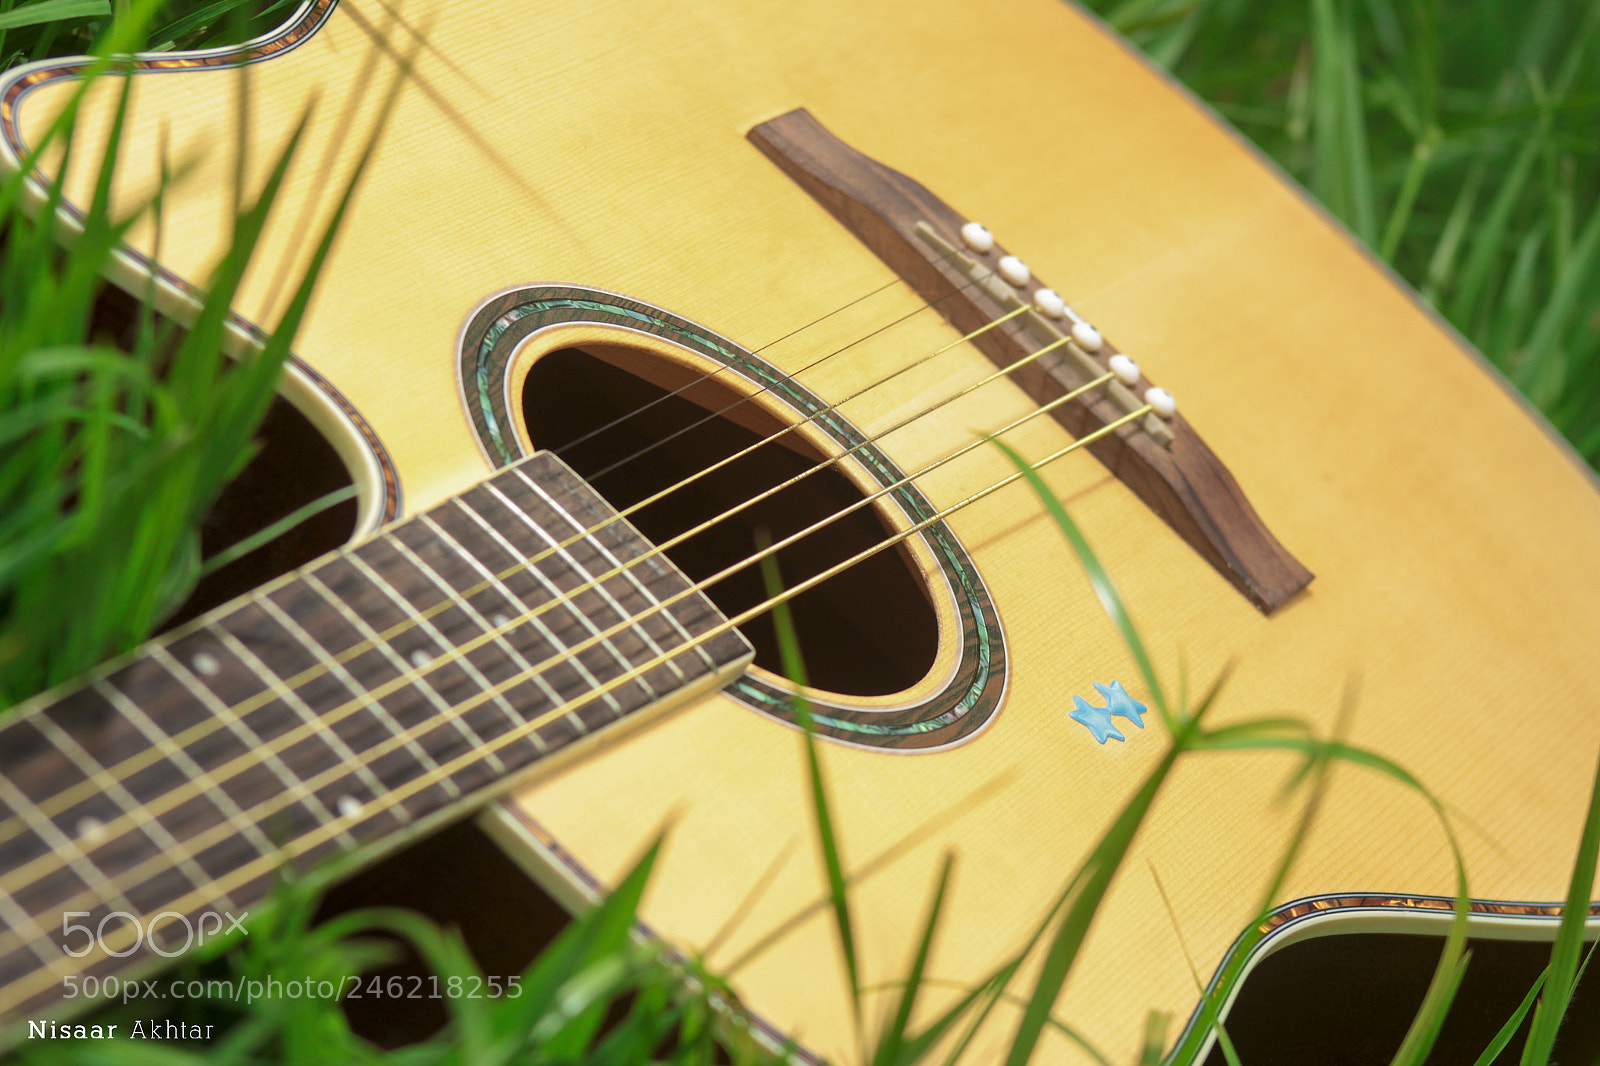 Canon EOS 100D (EOS Rebel SL1 / EOS Kiss X7) sample photo. The guitar photography